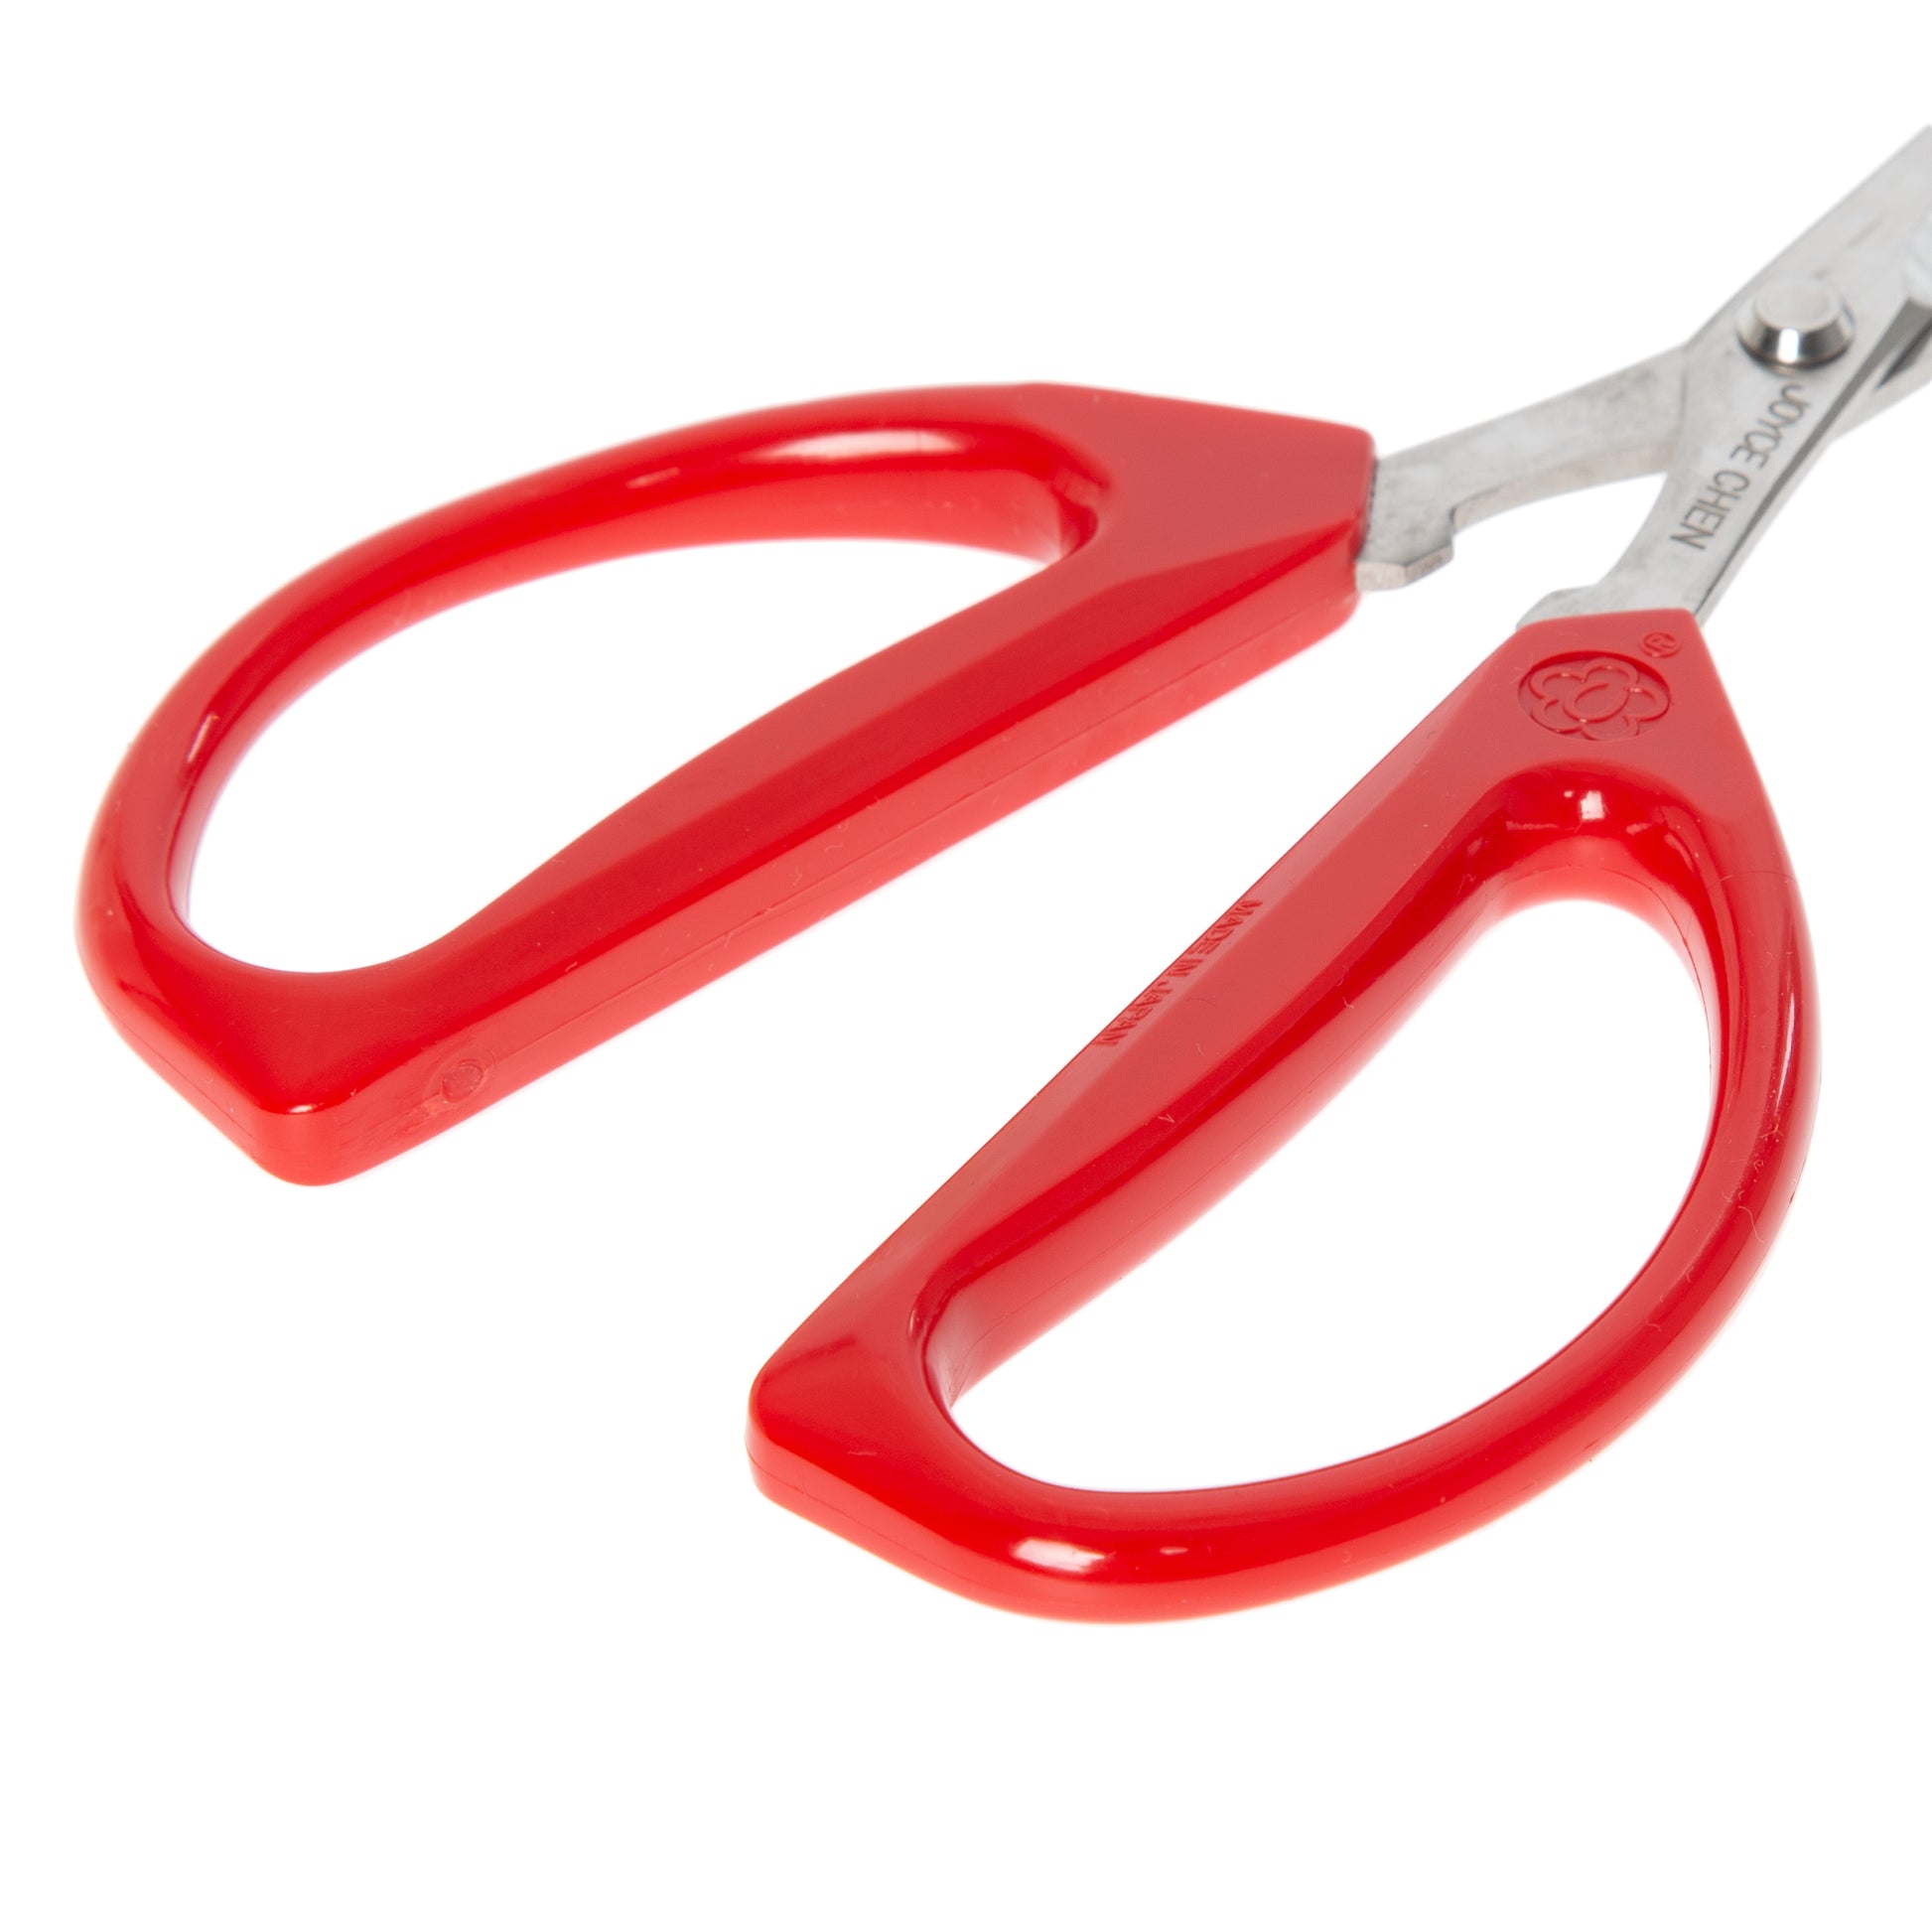 Joyjolt Kitchen Shears Heavy Duty Scissors With Sheaths - Set Of 2 Utility  Scissors Orange/purple : Target